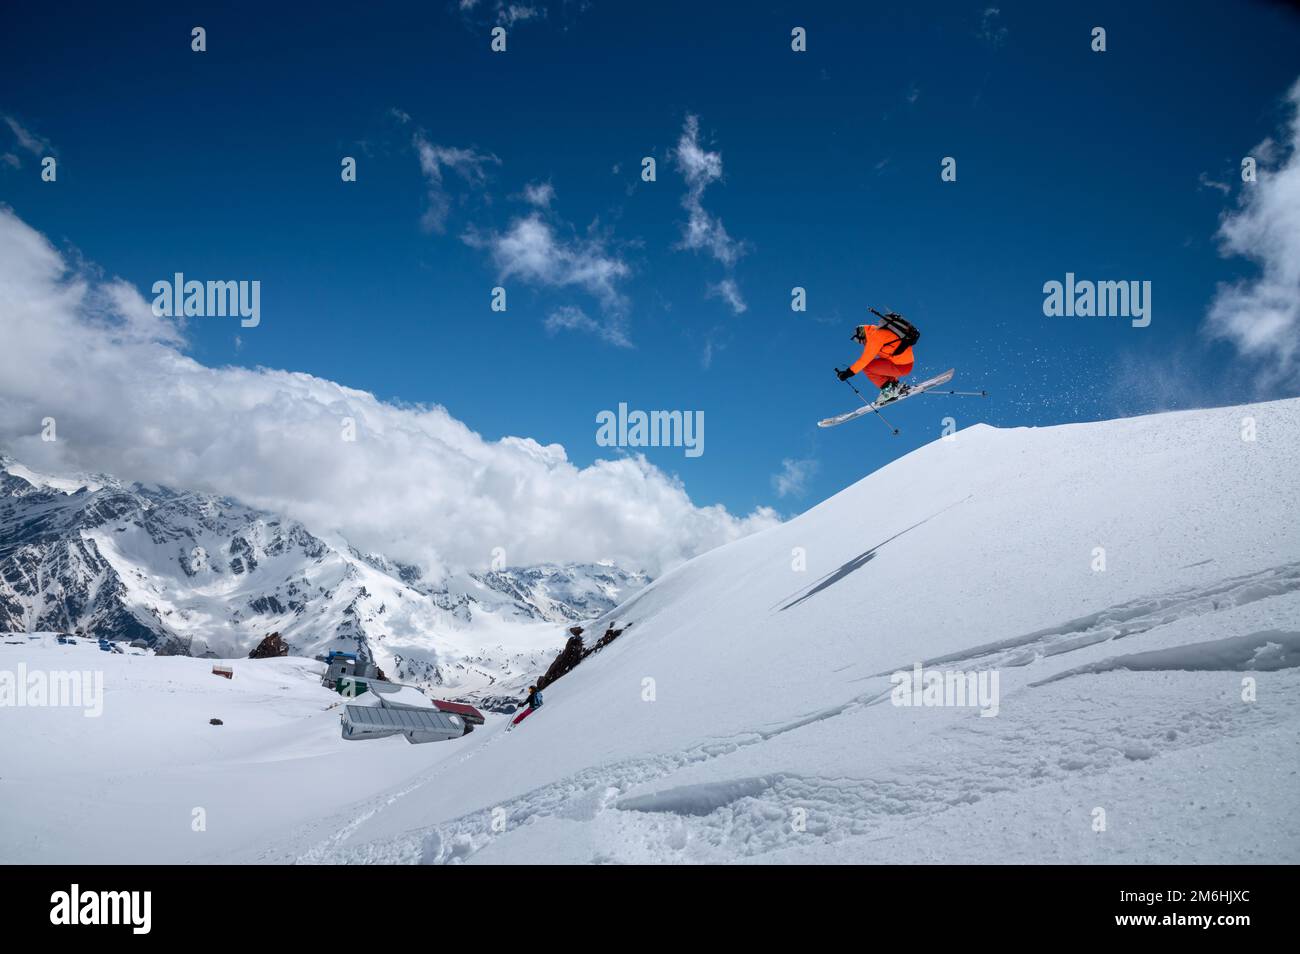 Montagne maschili immagini e fotografie stock ad alta risoluzione - Alamy